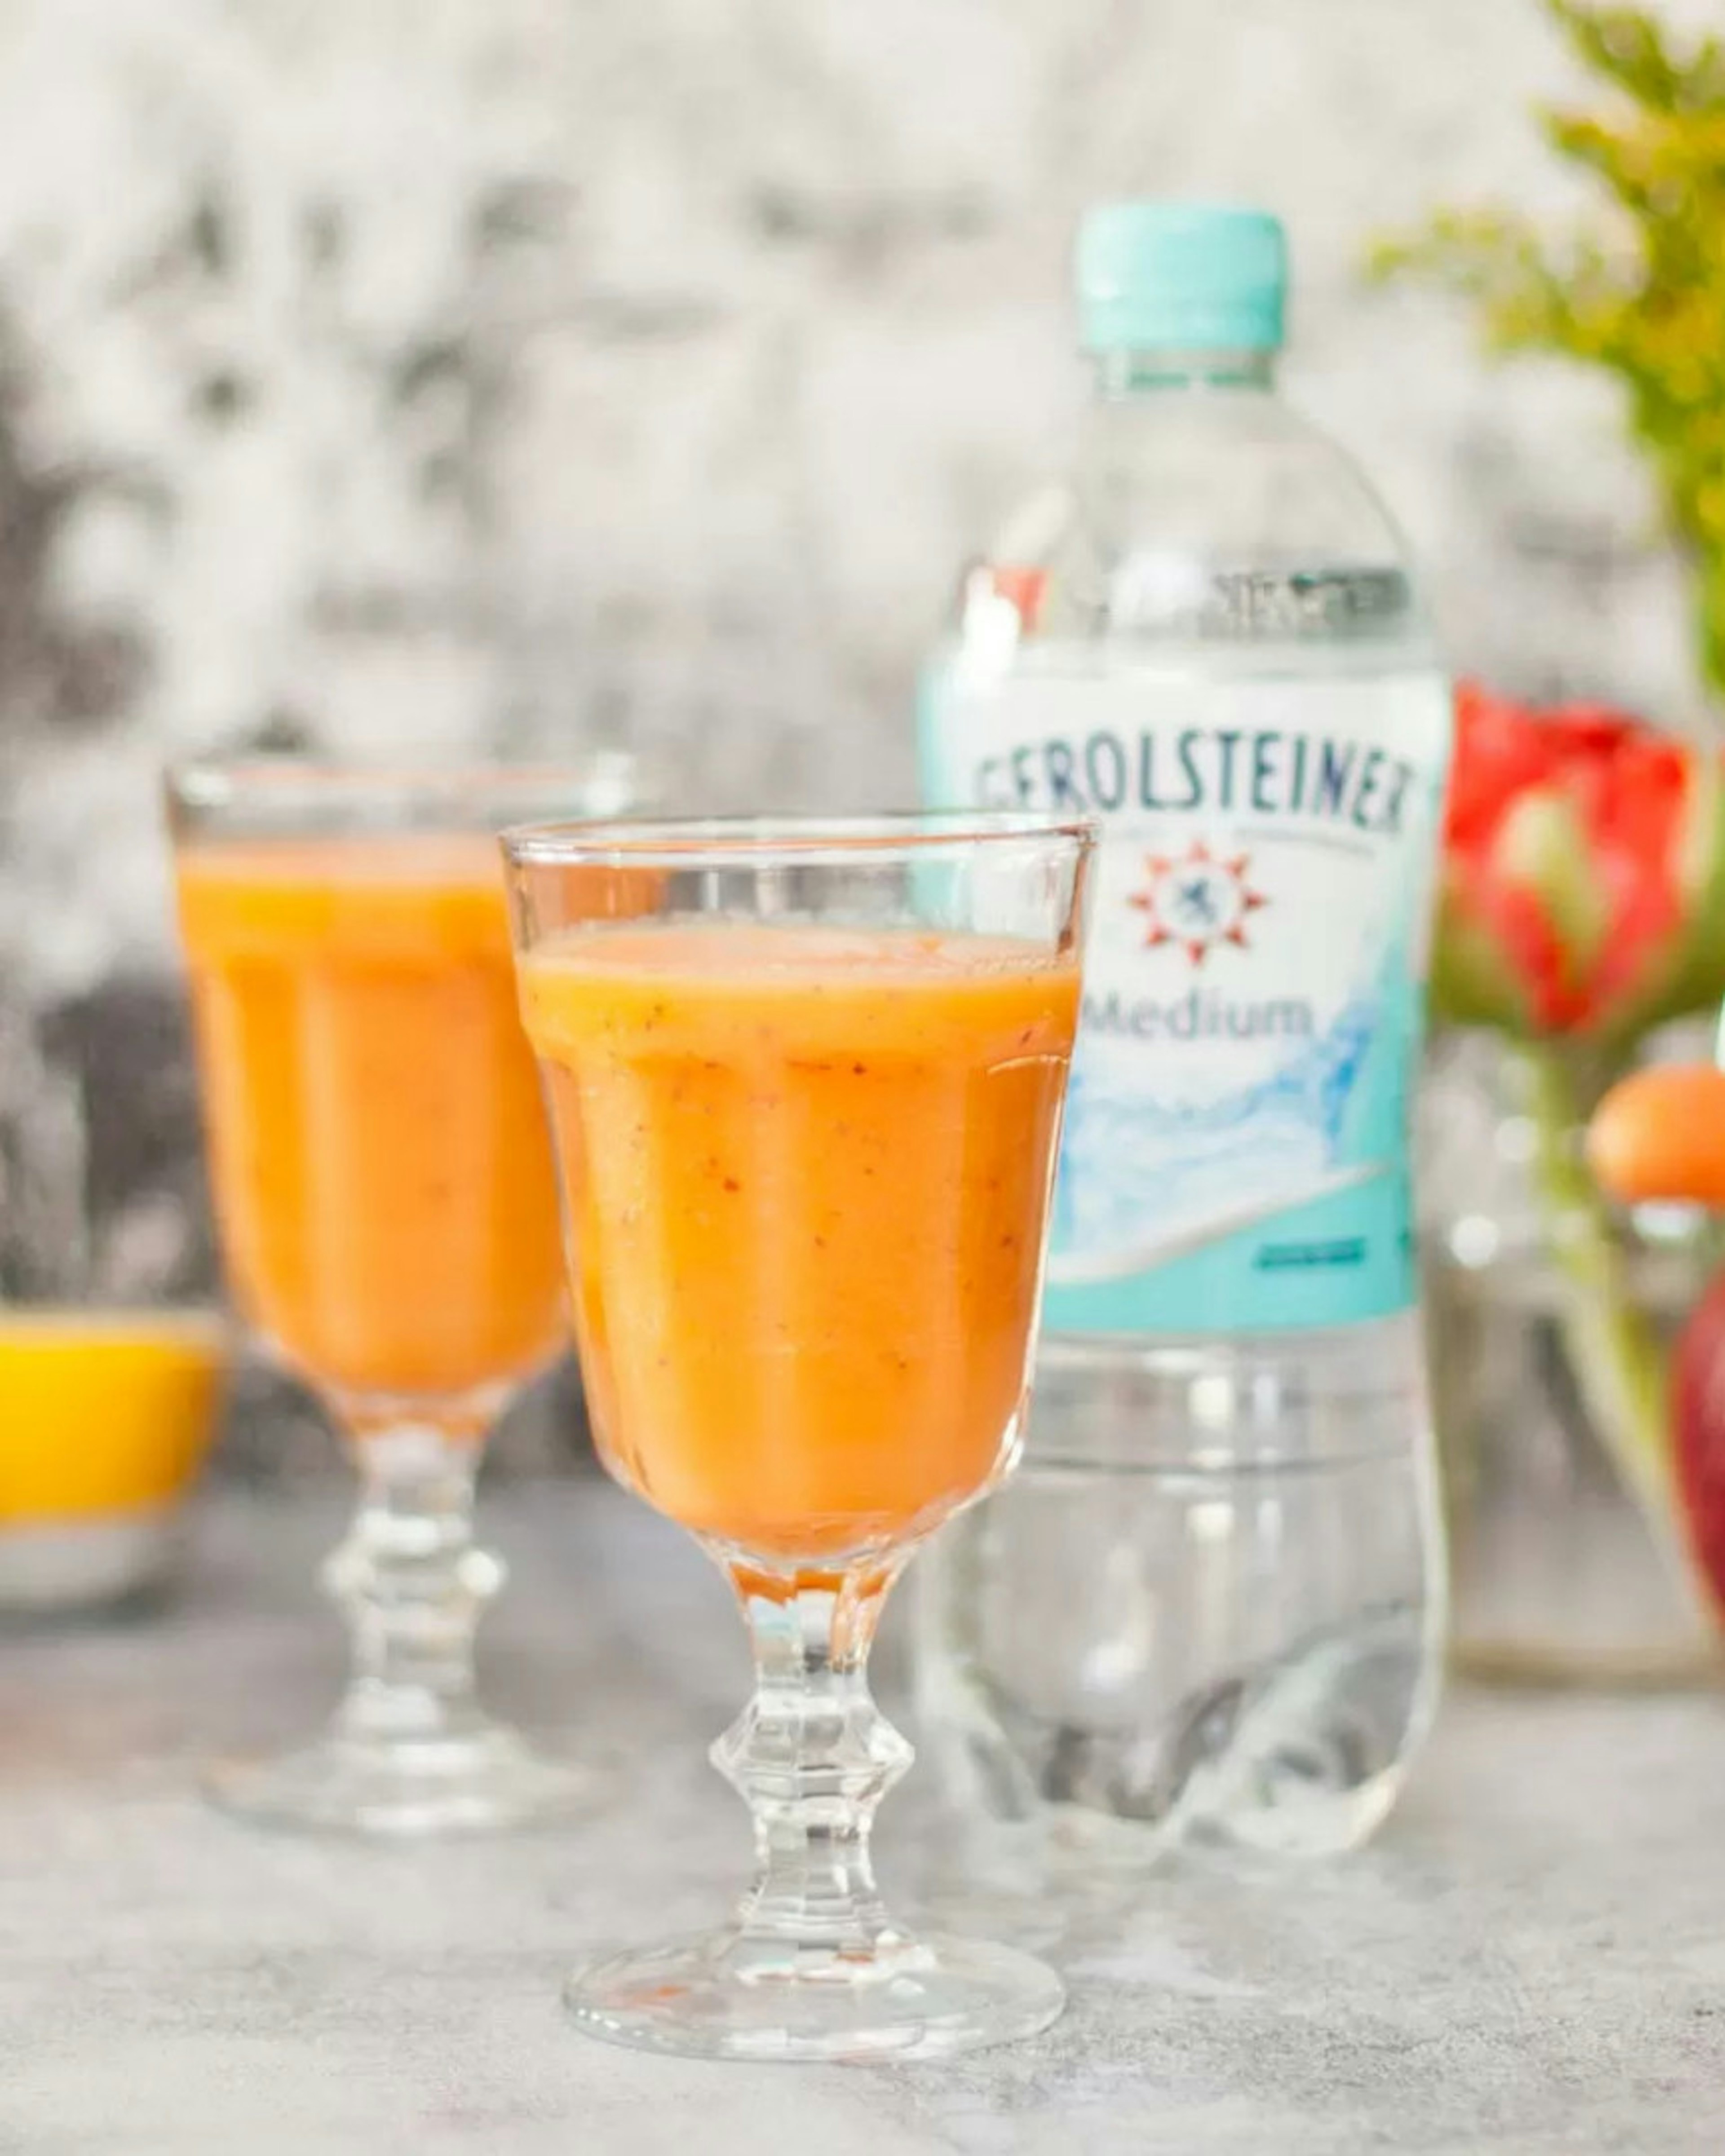 "2 Gläser mit orangenem Smoothie und  Gerolsteiner und Apfel im Hintergrund"